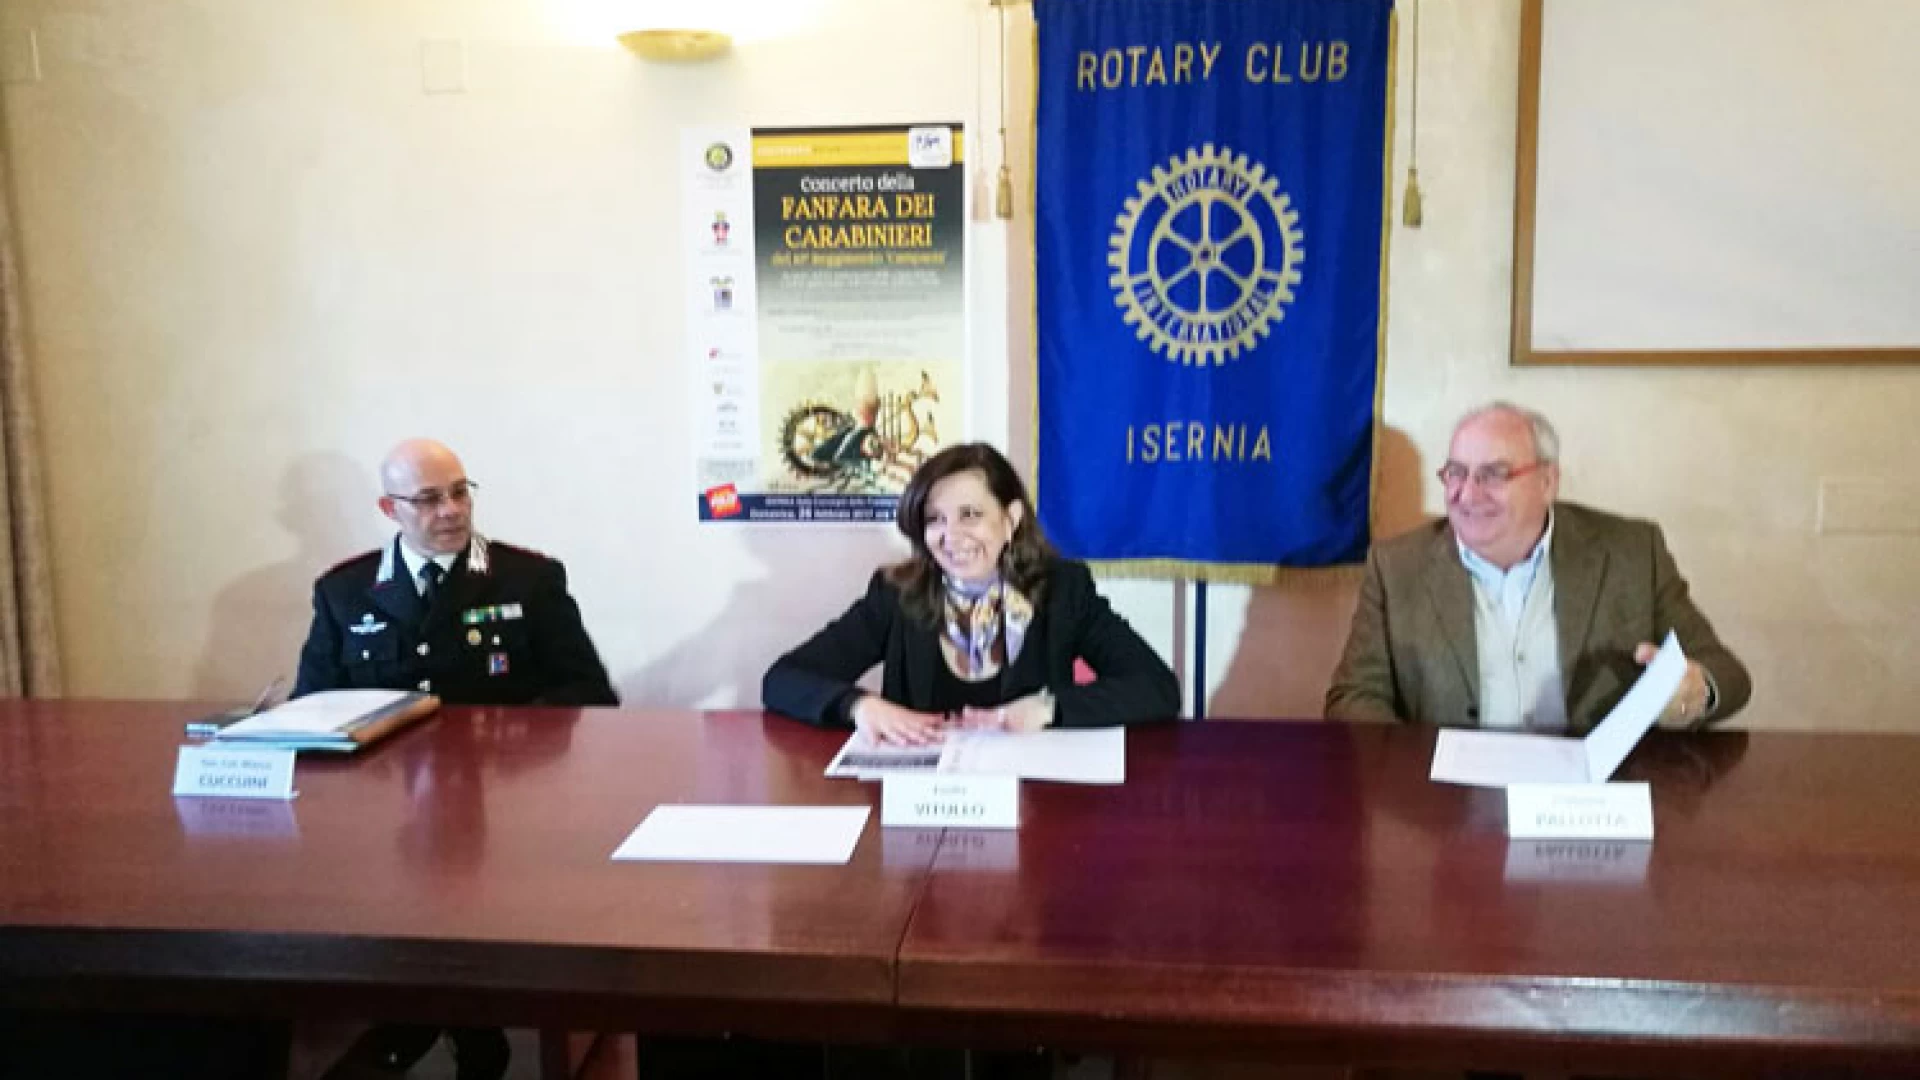 Isernia: il Rotary Club cittadino consegna assegno alla Caritas diocesana